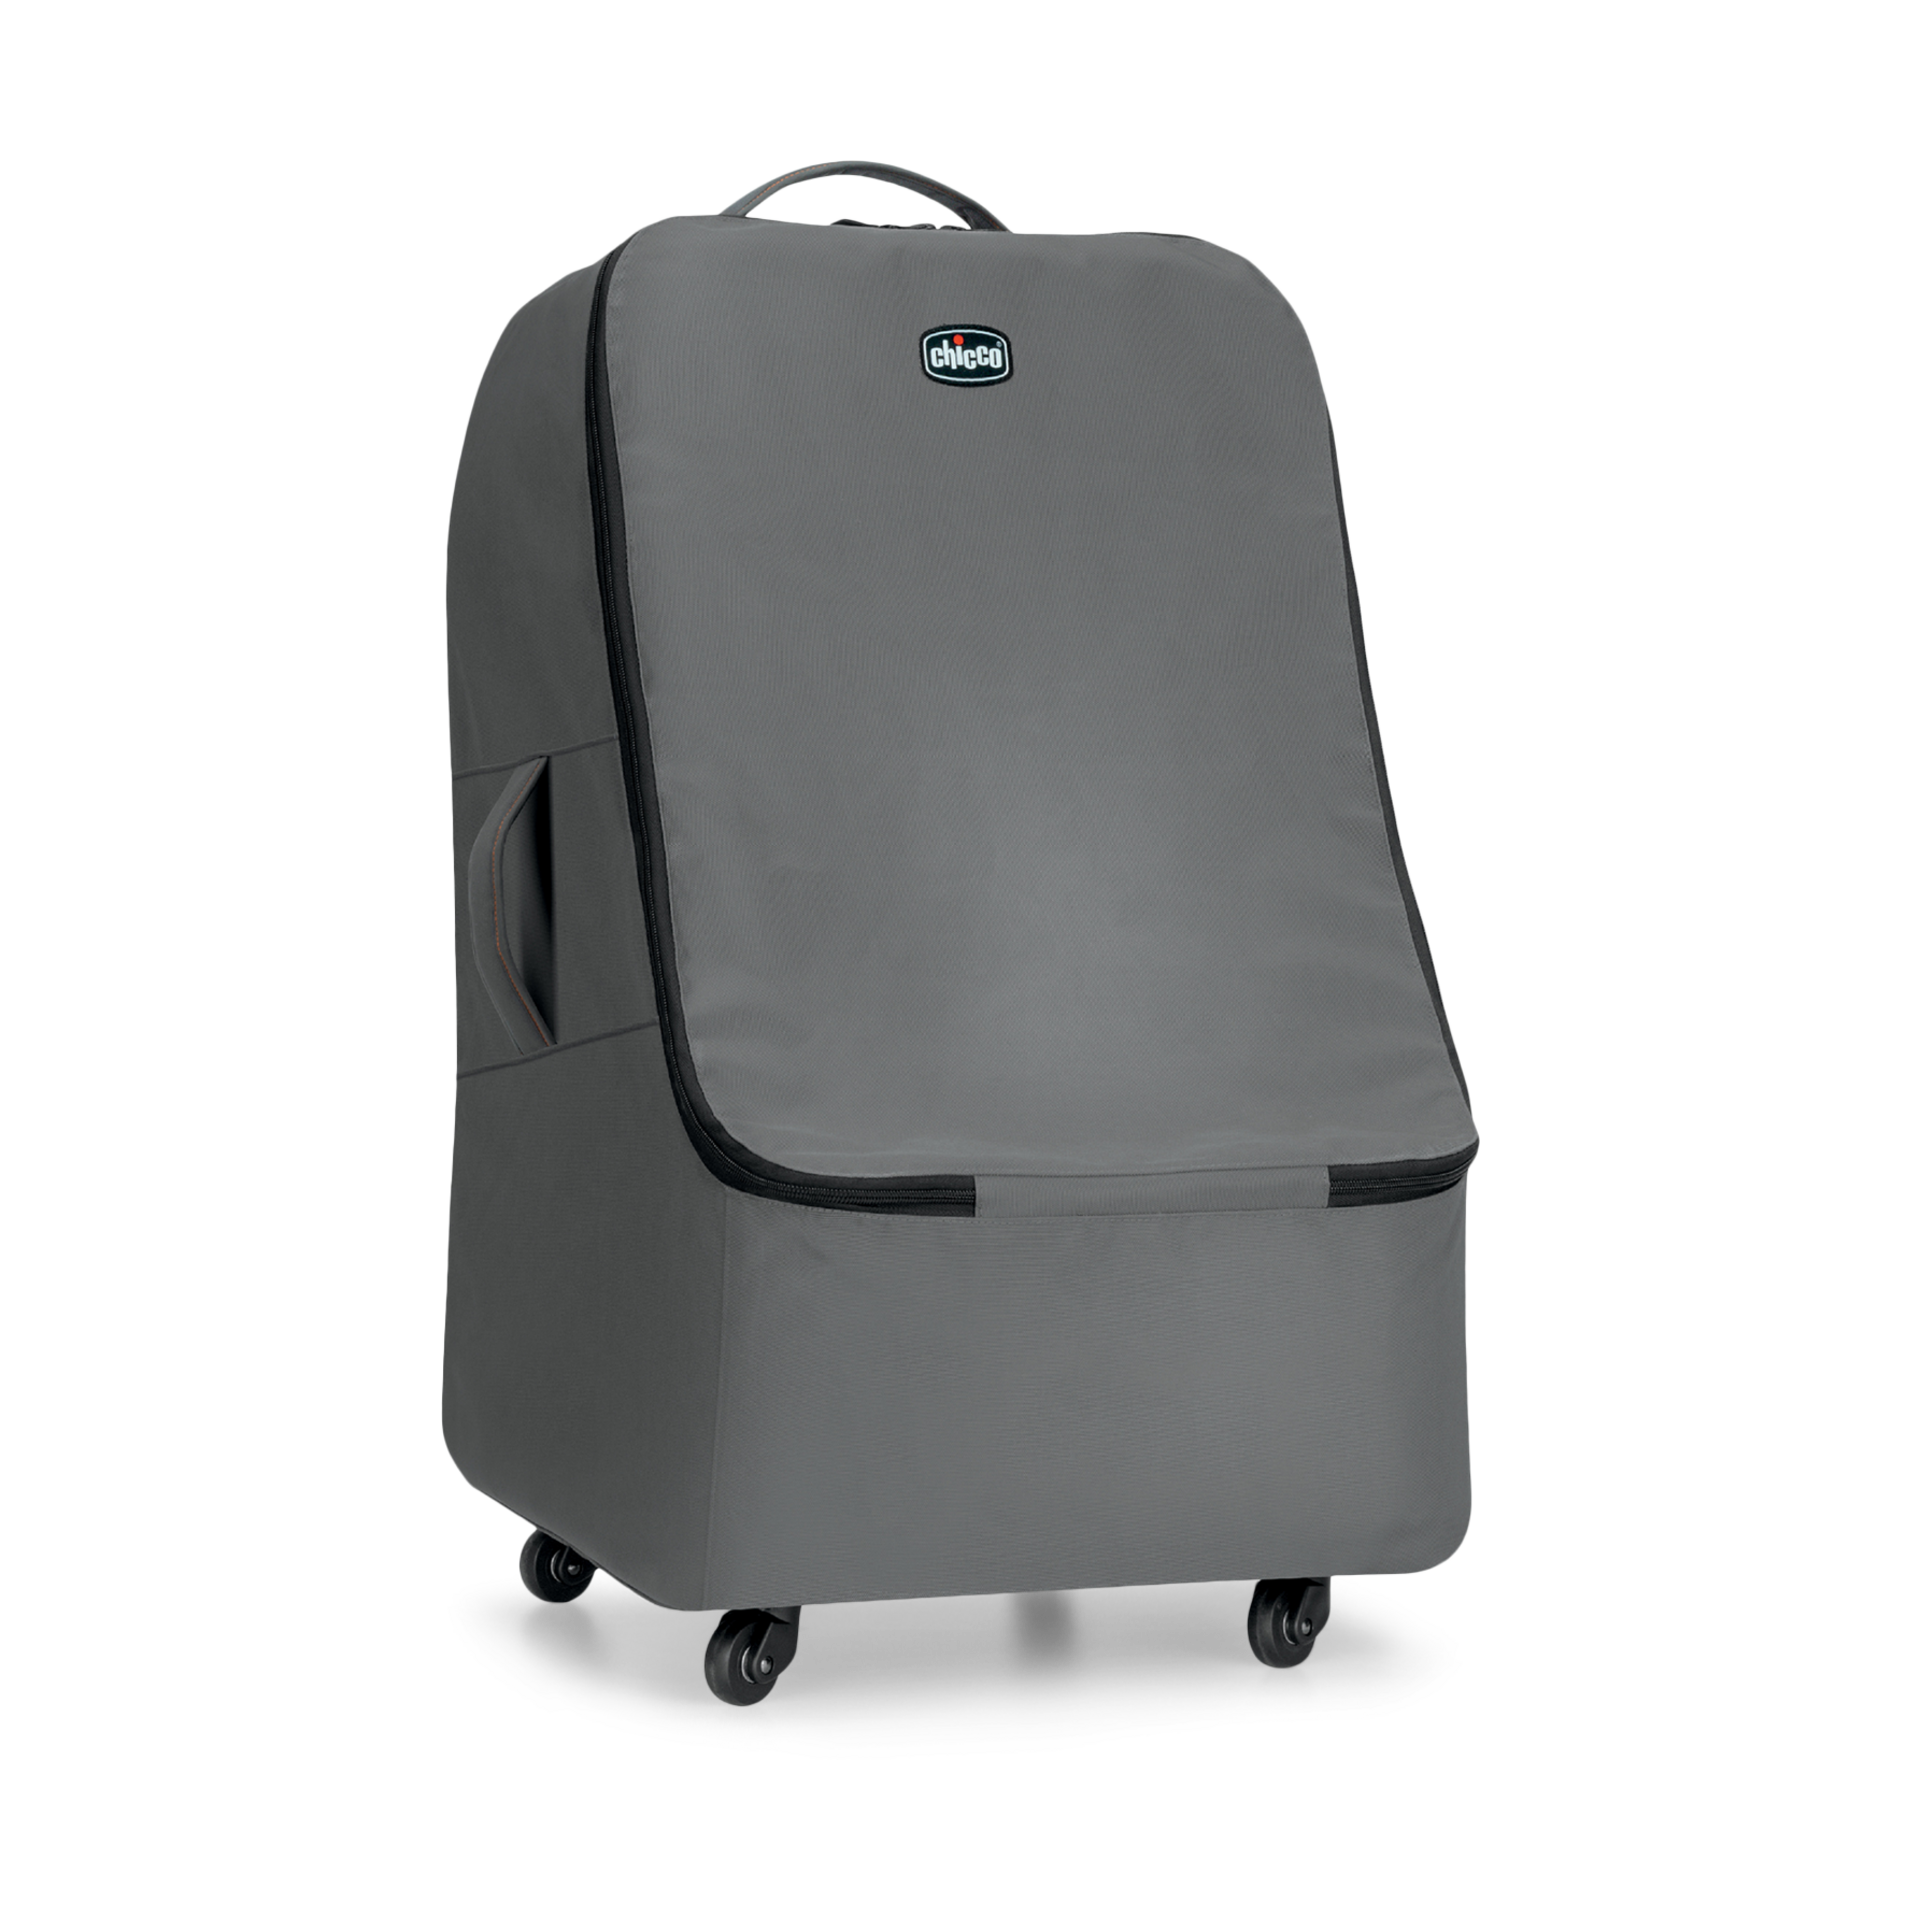 keyfit 30 travel bag